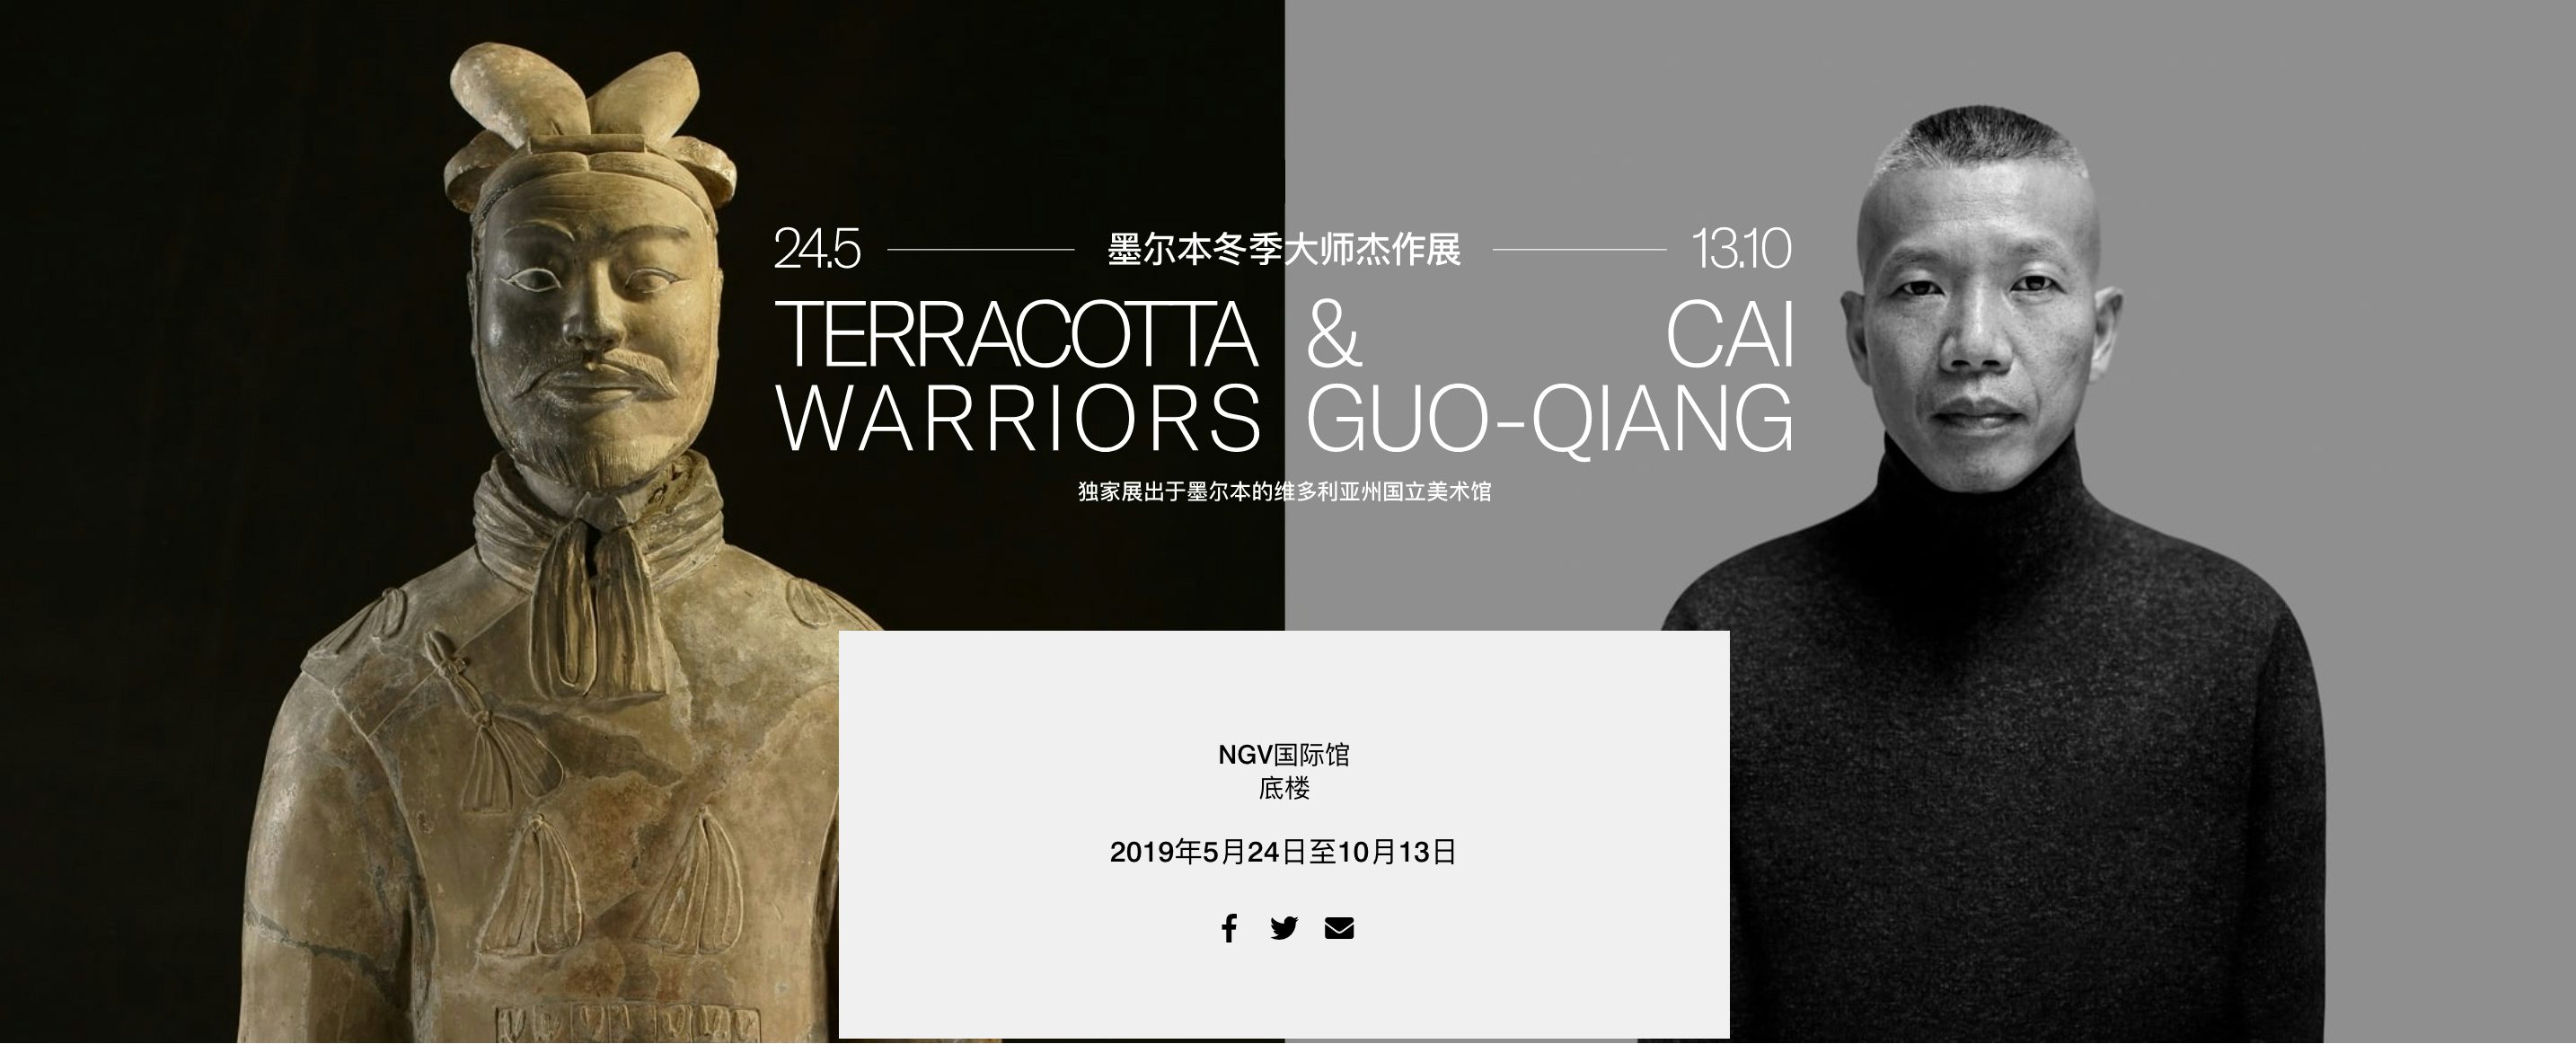 截图来自展览官网：https://www.ngv.vic.gov.au/exhibition/terracotta-warriors-cai-guo-qiang/#ch